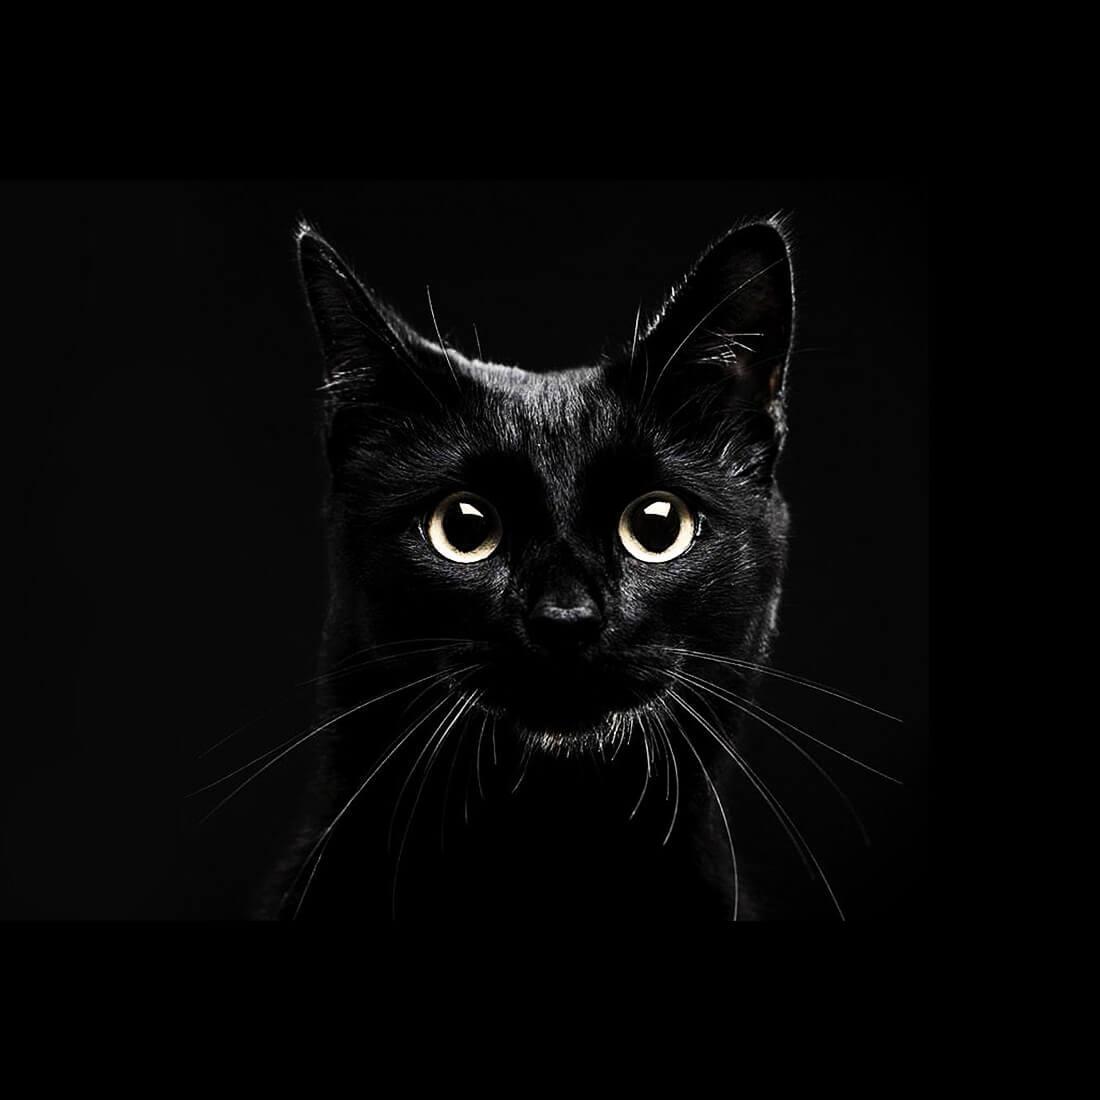 Android 用の 黒猫ライブ壁紙 Apk をダウンロード